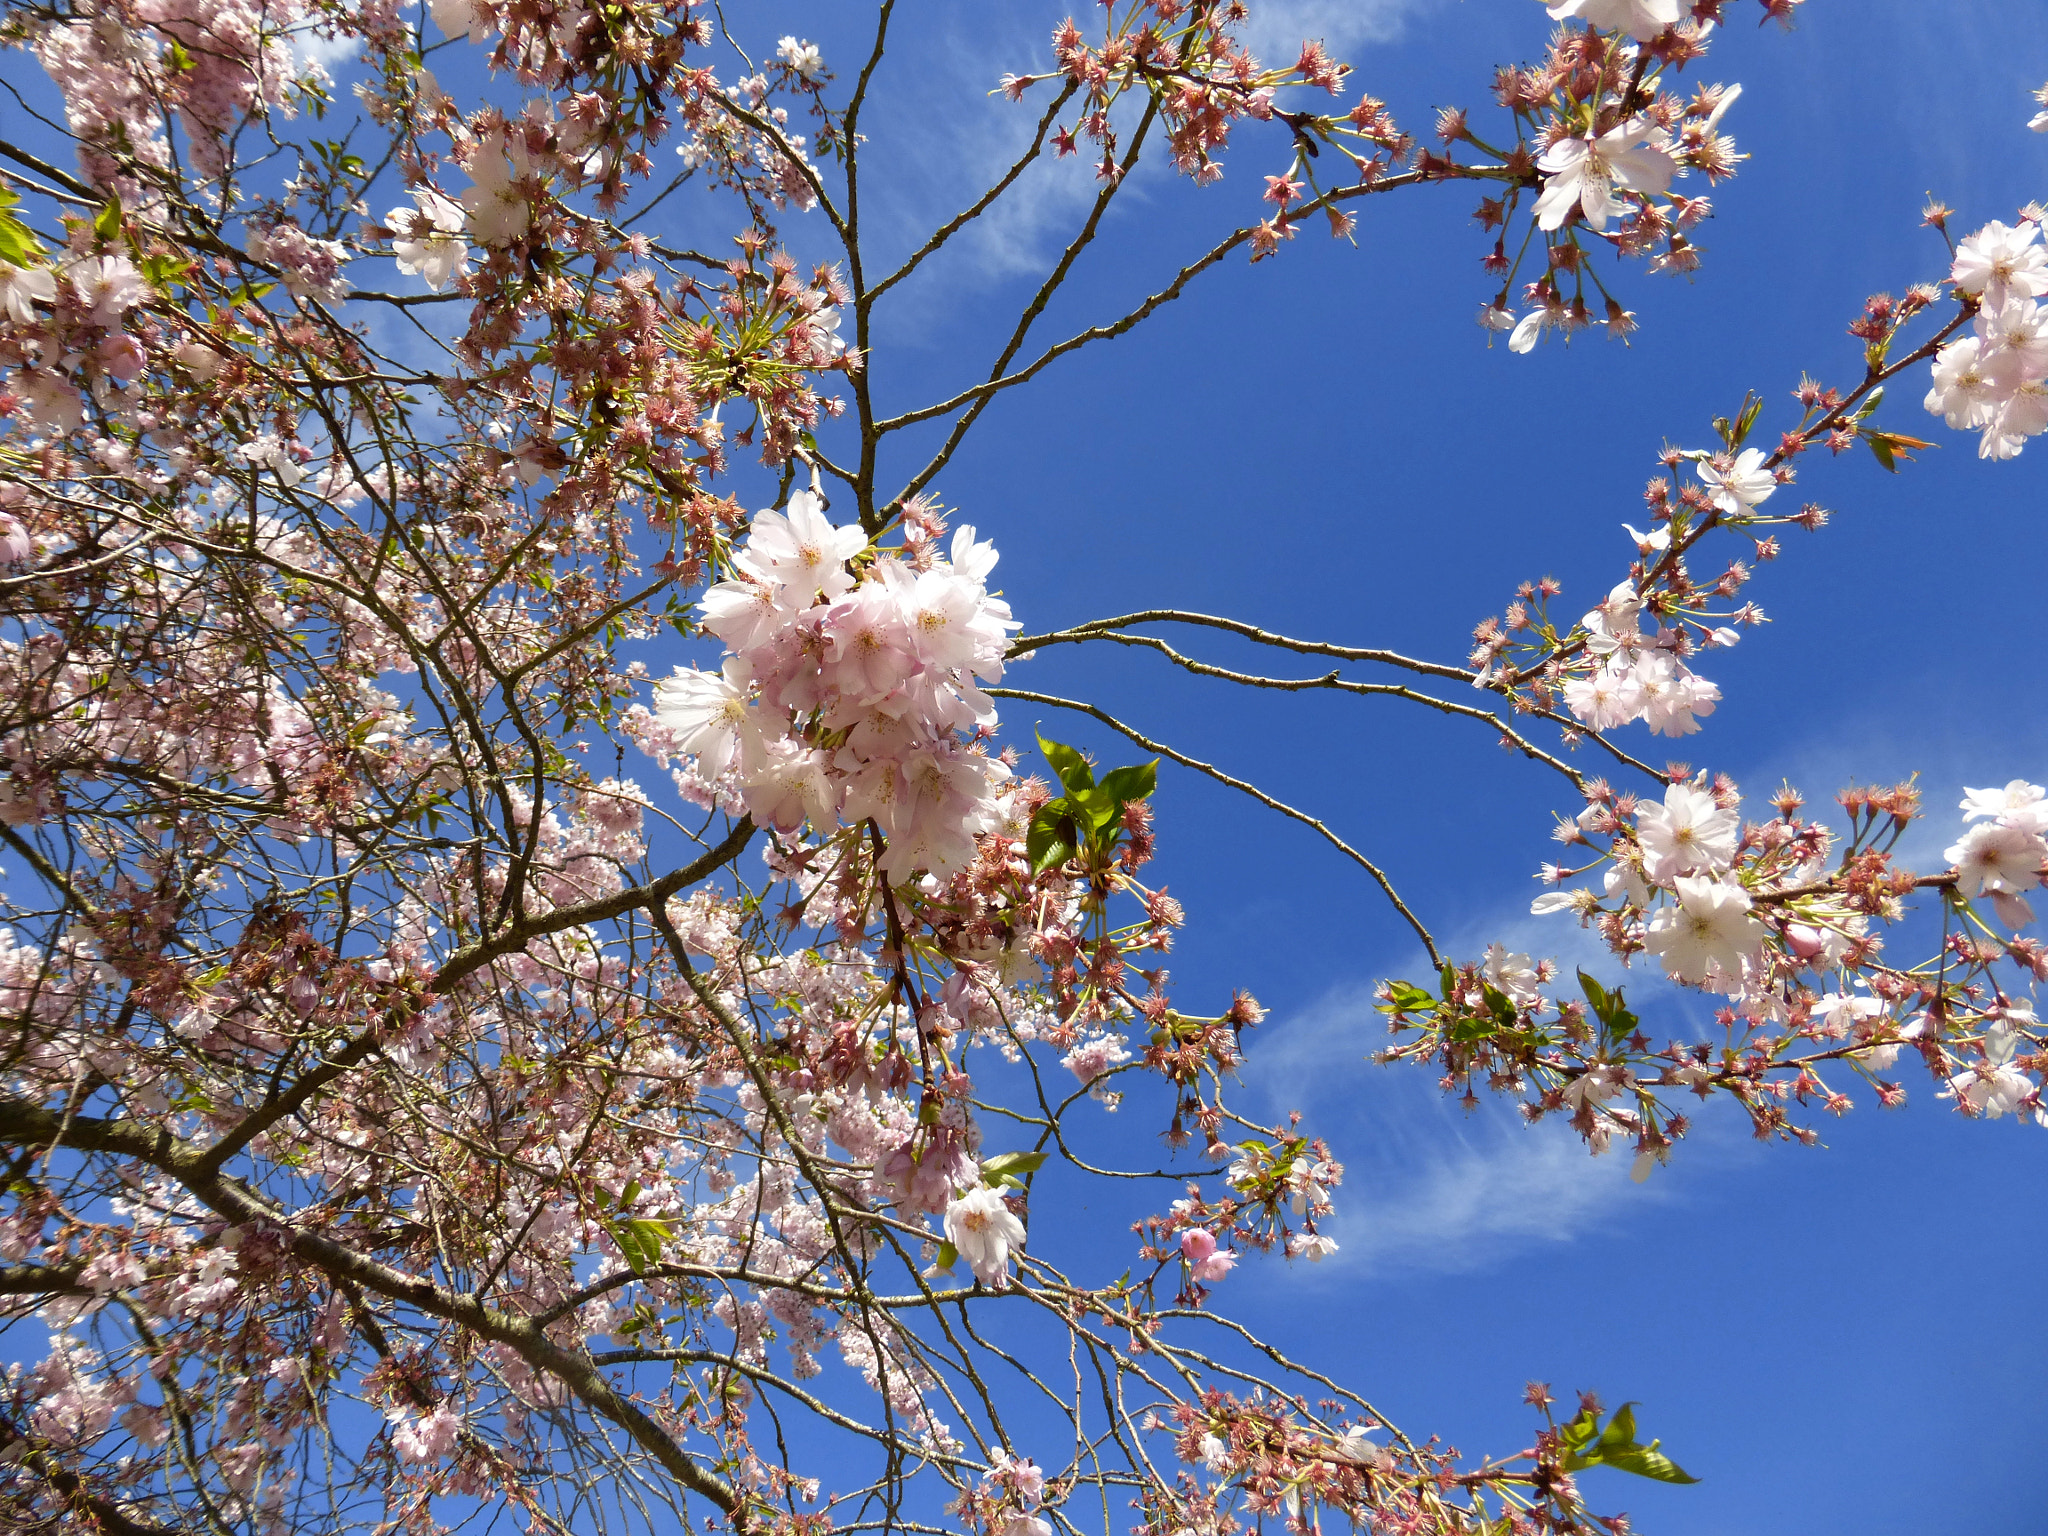 Panasonic DMC-TZ36 sample photo. Giverny blossom photography